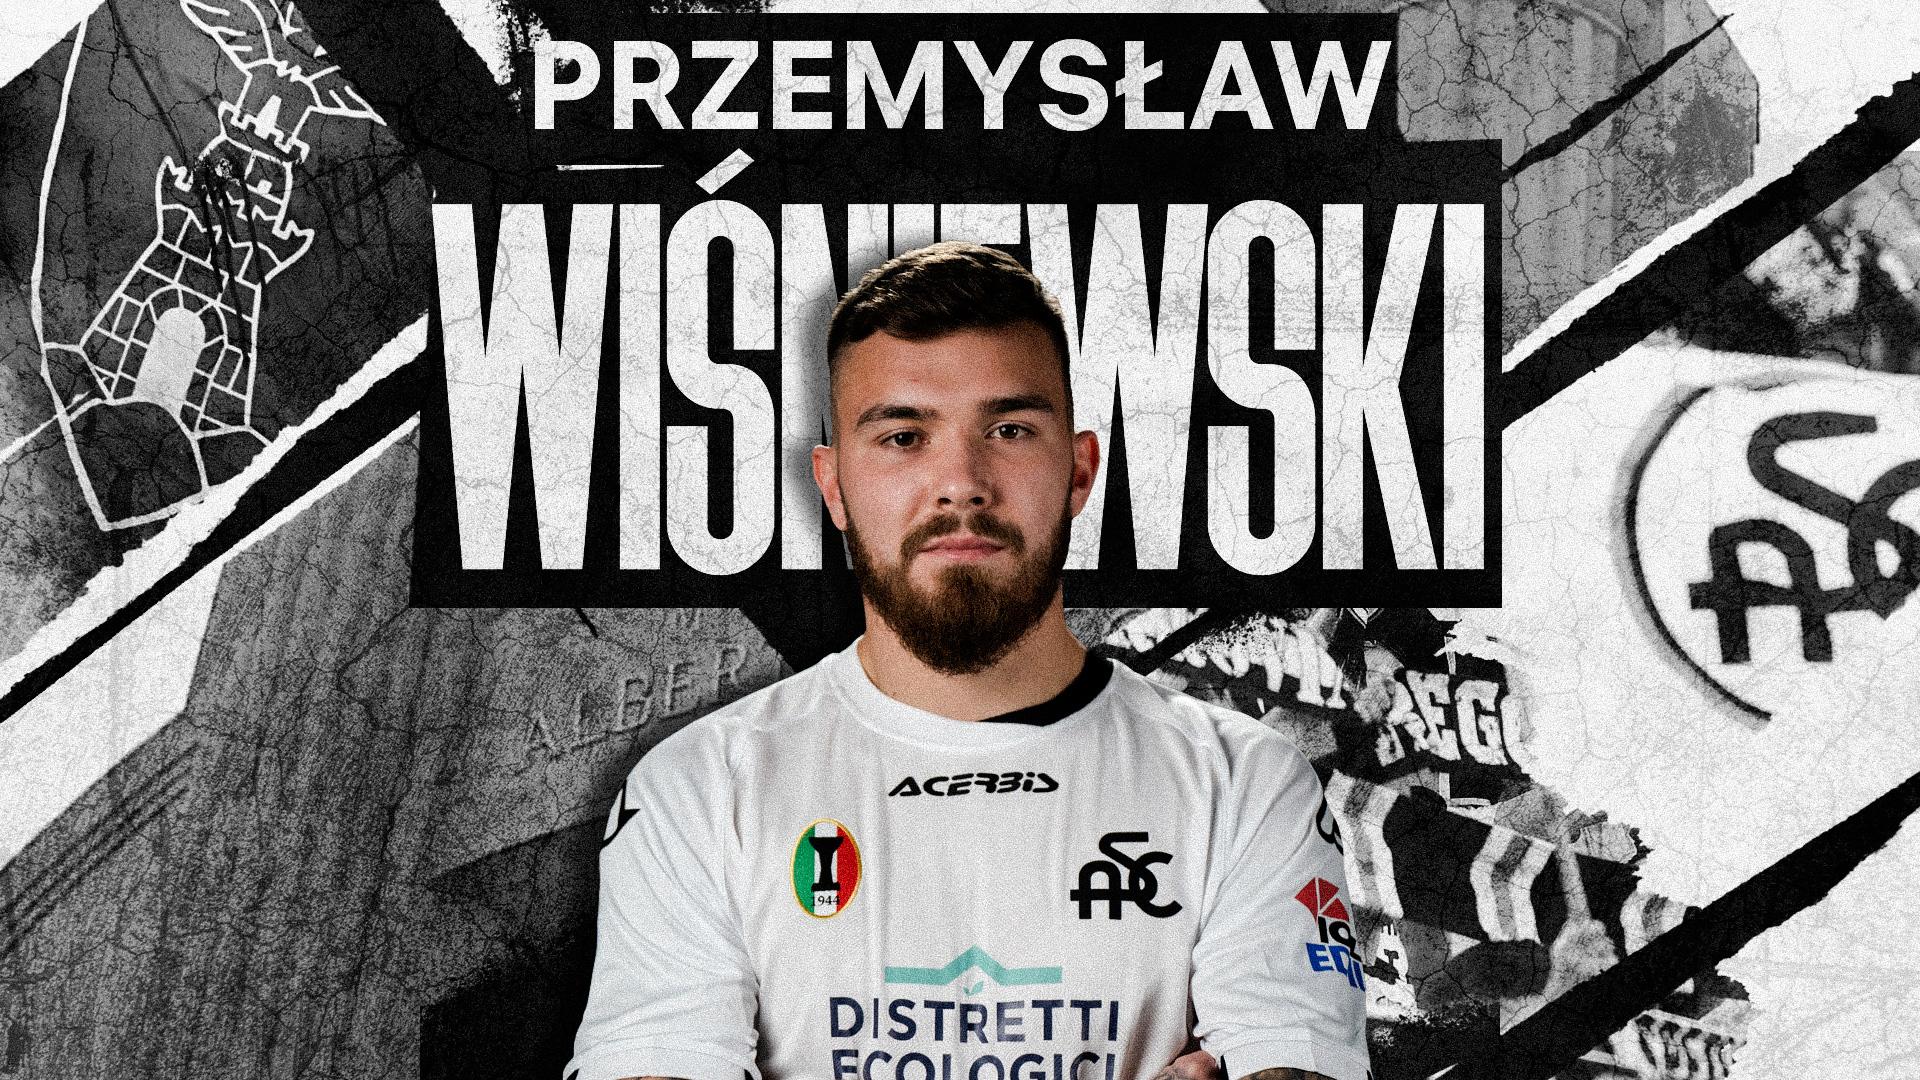 Ufficiale | Przemysław Wiśniewski è un nuovo calciatore dello Spezia